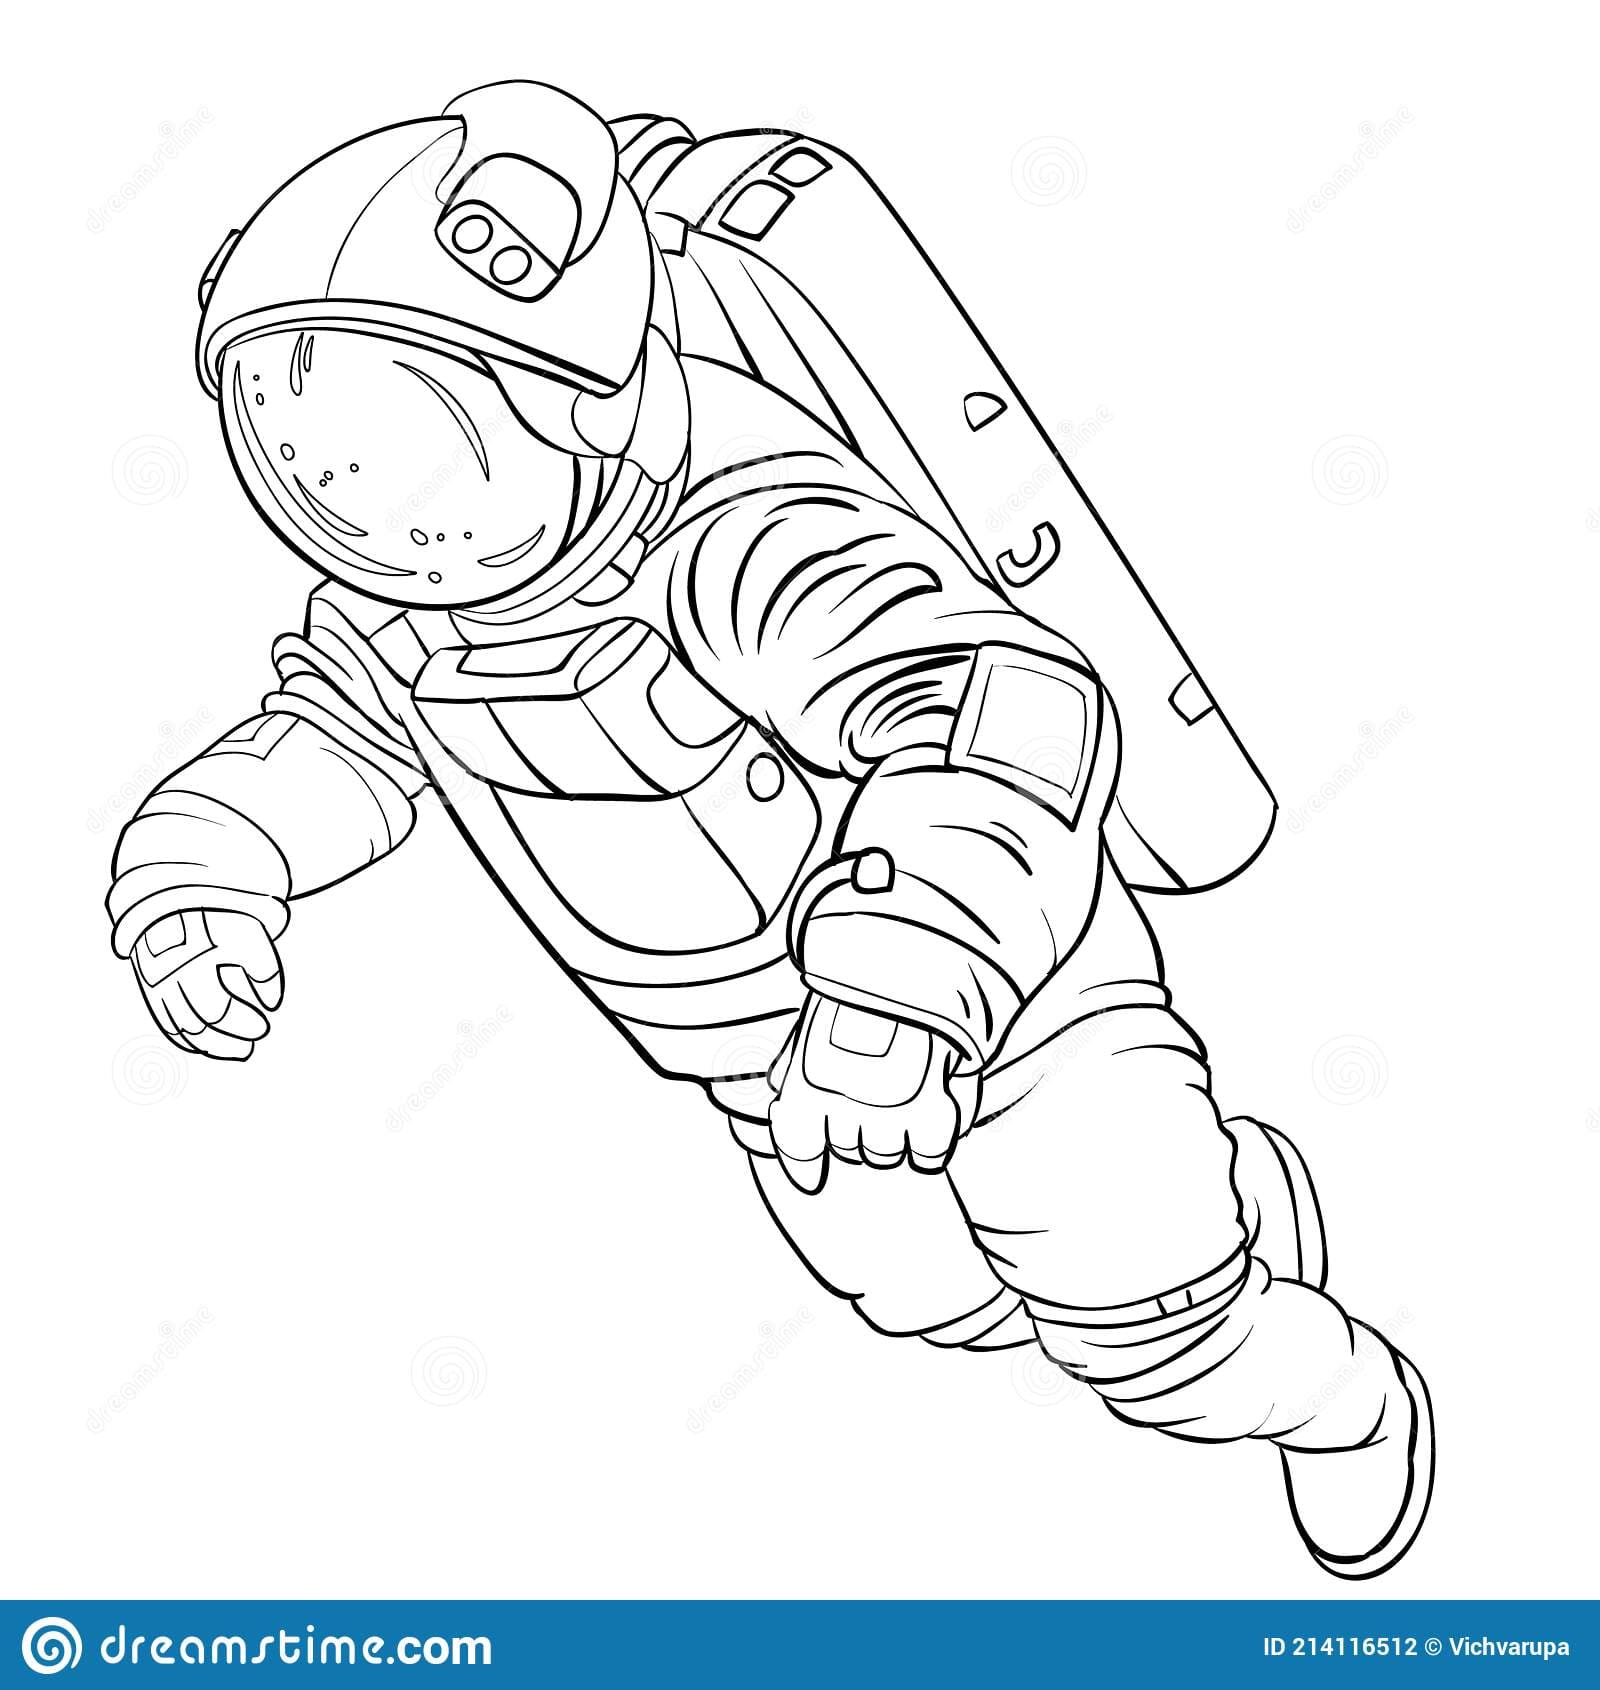 Космонавт в коляске рисунок